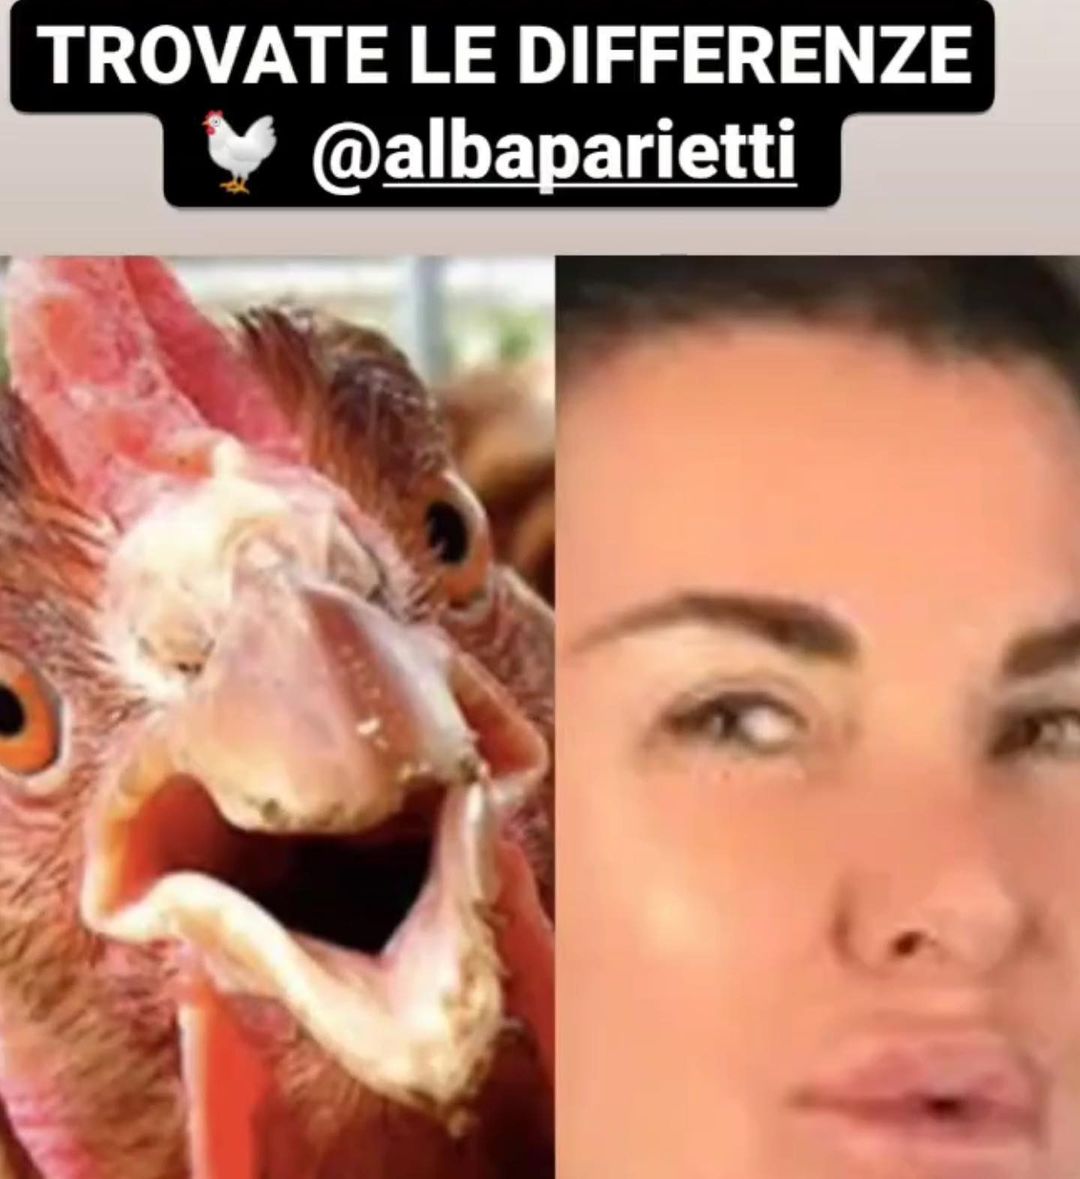 Alba Parietti insultata da alcune pagine fan di Antonella Elia